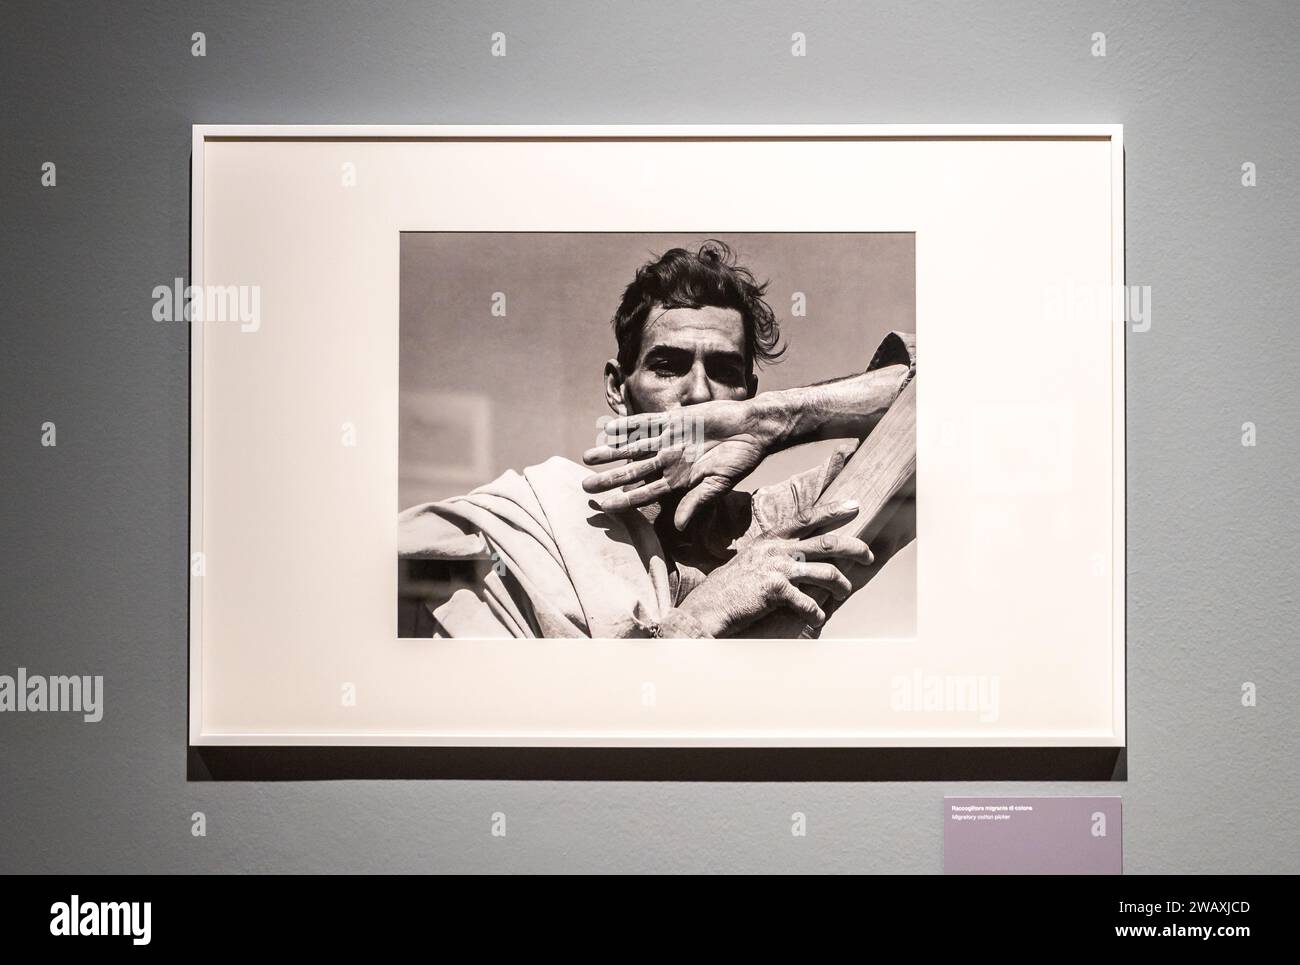 Cueilleuse de coton migratrice 1937. Exposition photographique de la photographe américaine Dorothea Lange. Musée civique de Bassano del grappa, Italie, 16 décembre 2023 Banque D'Images